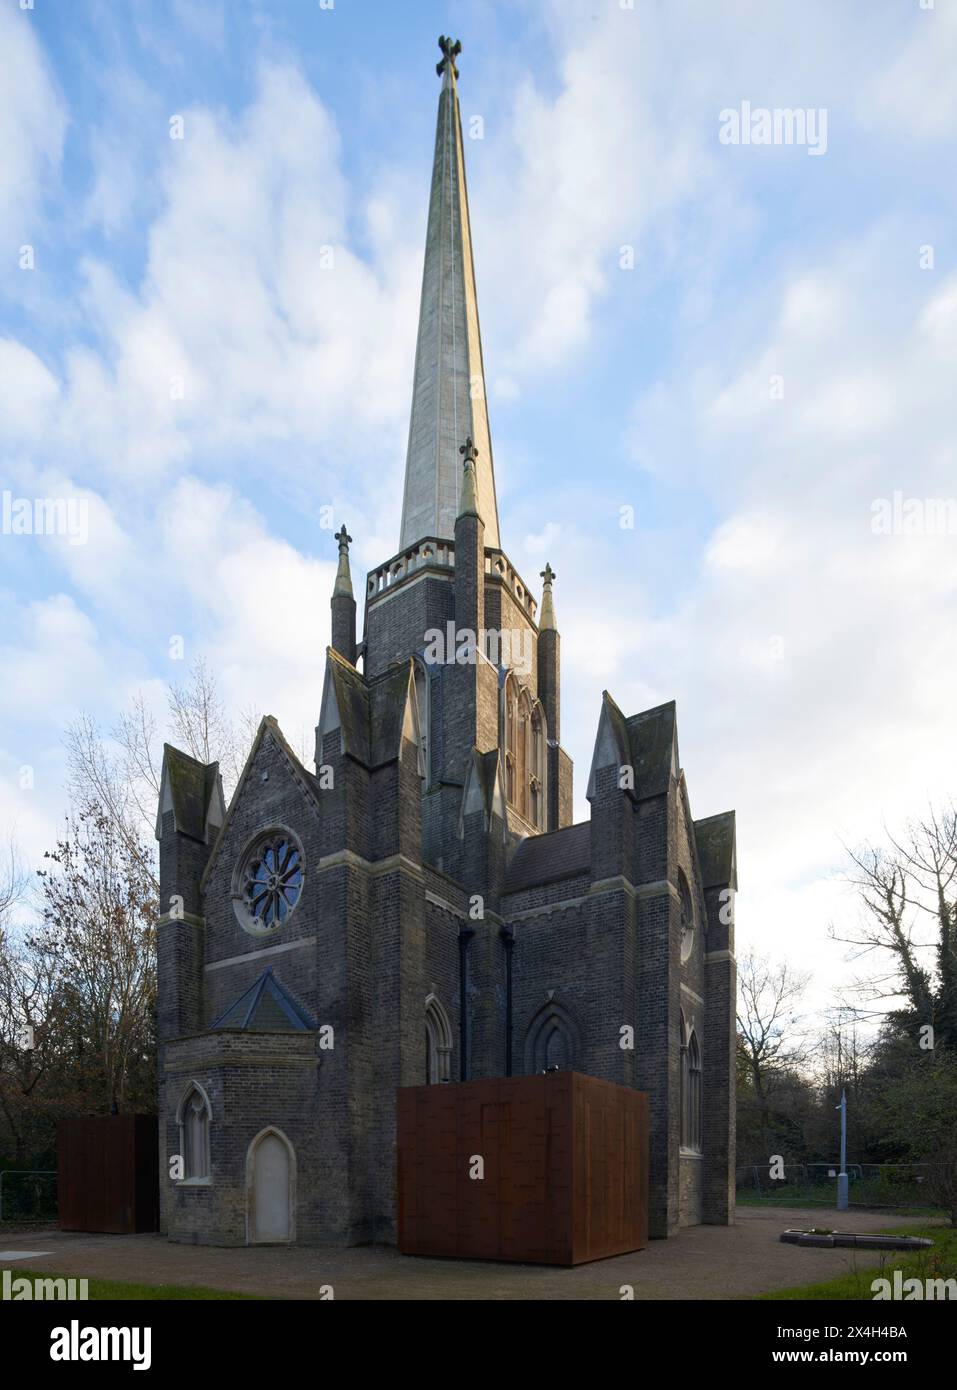 Élévation de façade extérieure avec pavillon CORTEN. Abney Park Chapel, Londres, Royaume-Uni. Architecte : Kaner Olette Architects, 2023. Banque D'Images